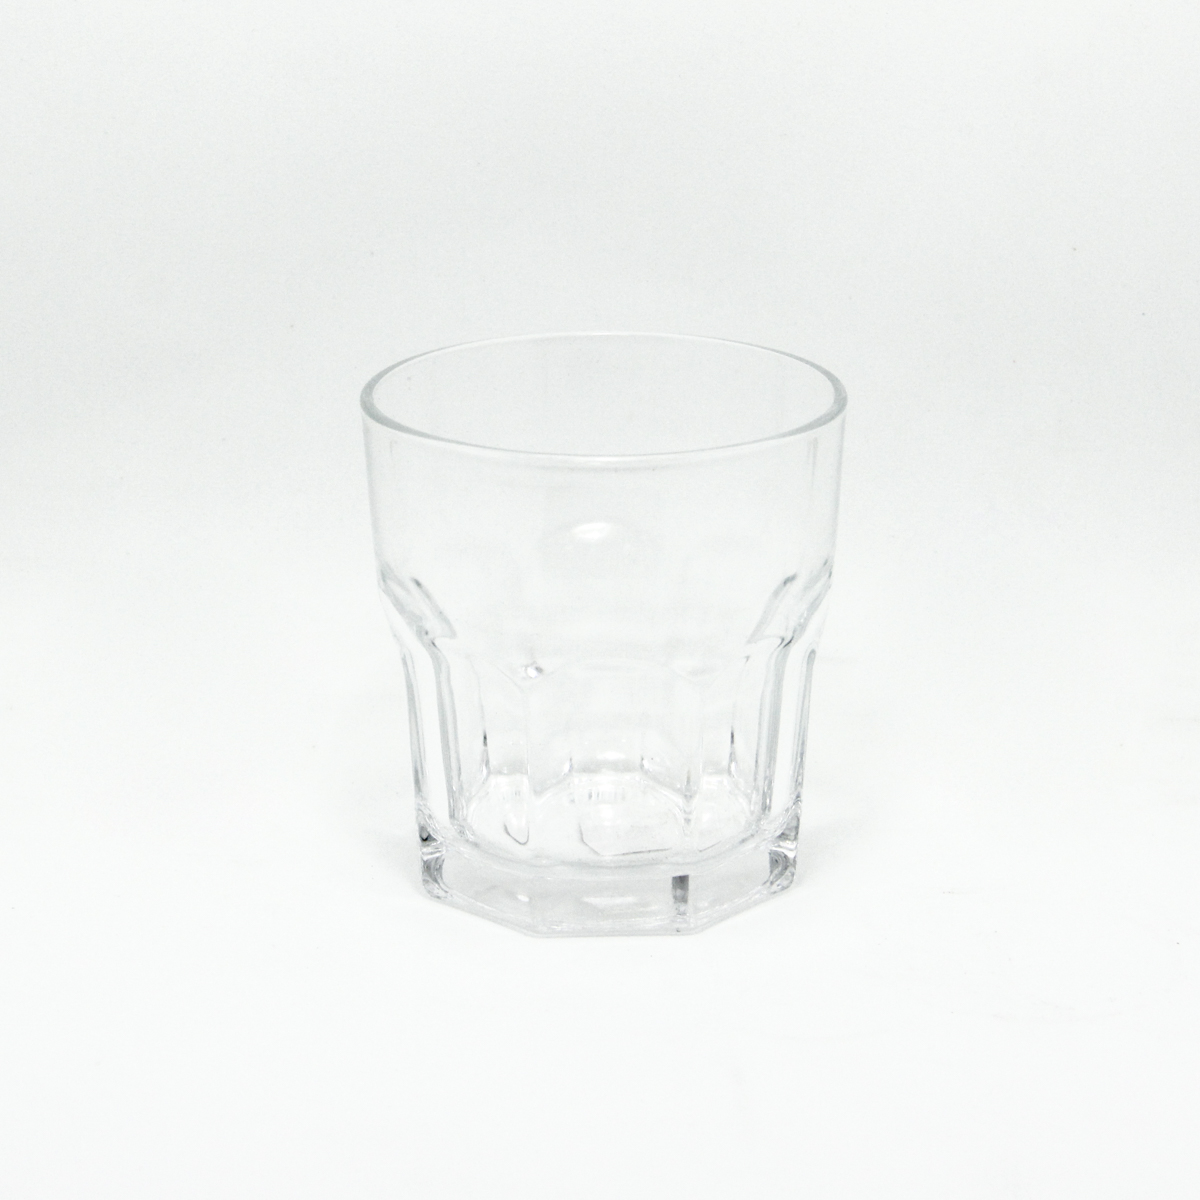 Vaso Bristol corto Nadir - vidrio - 320ml